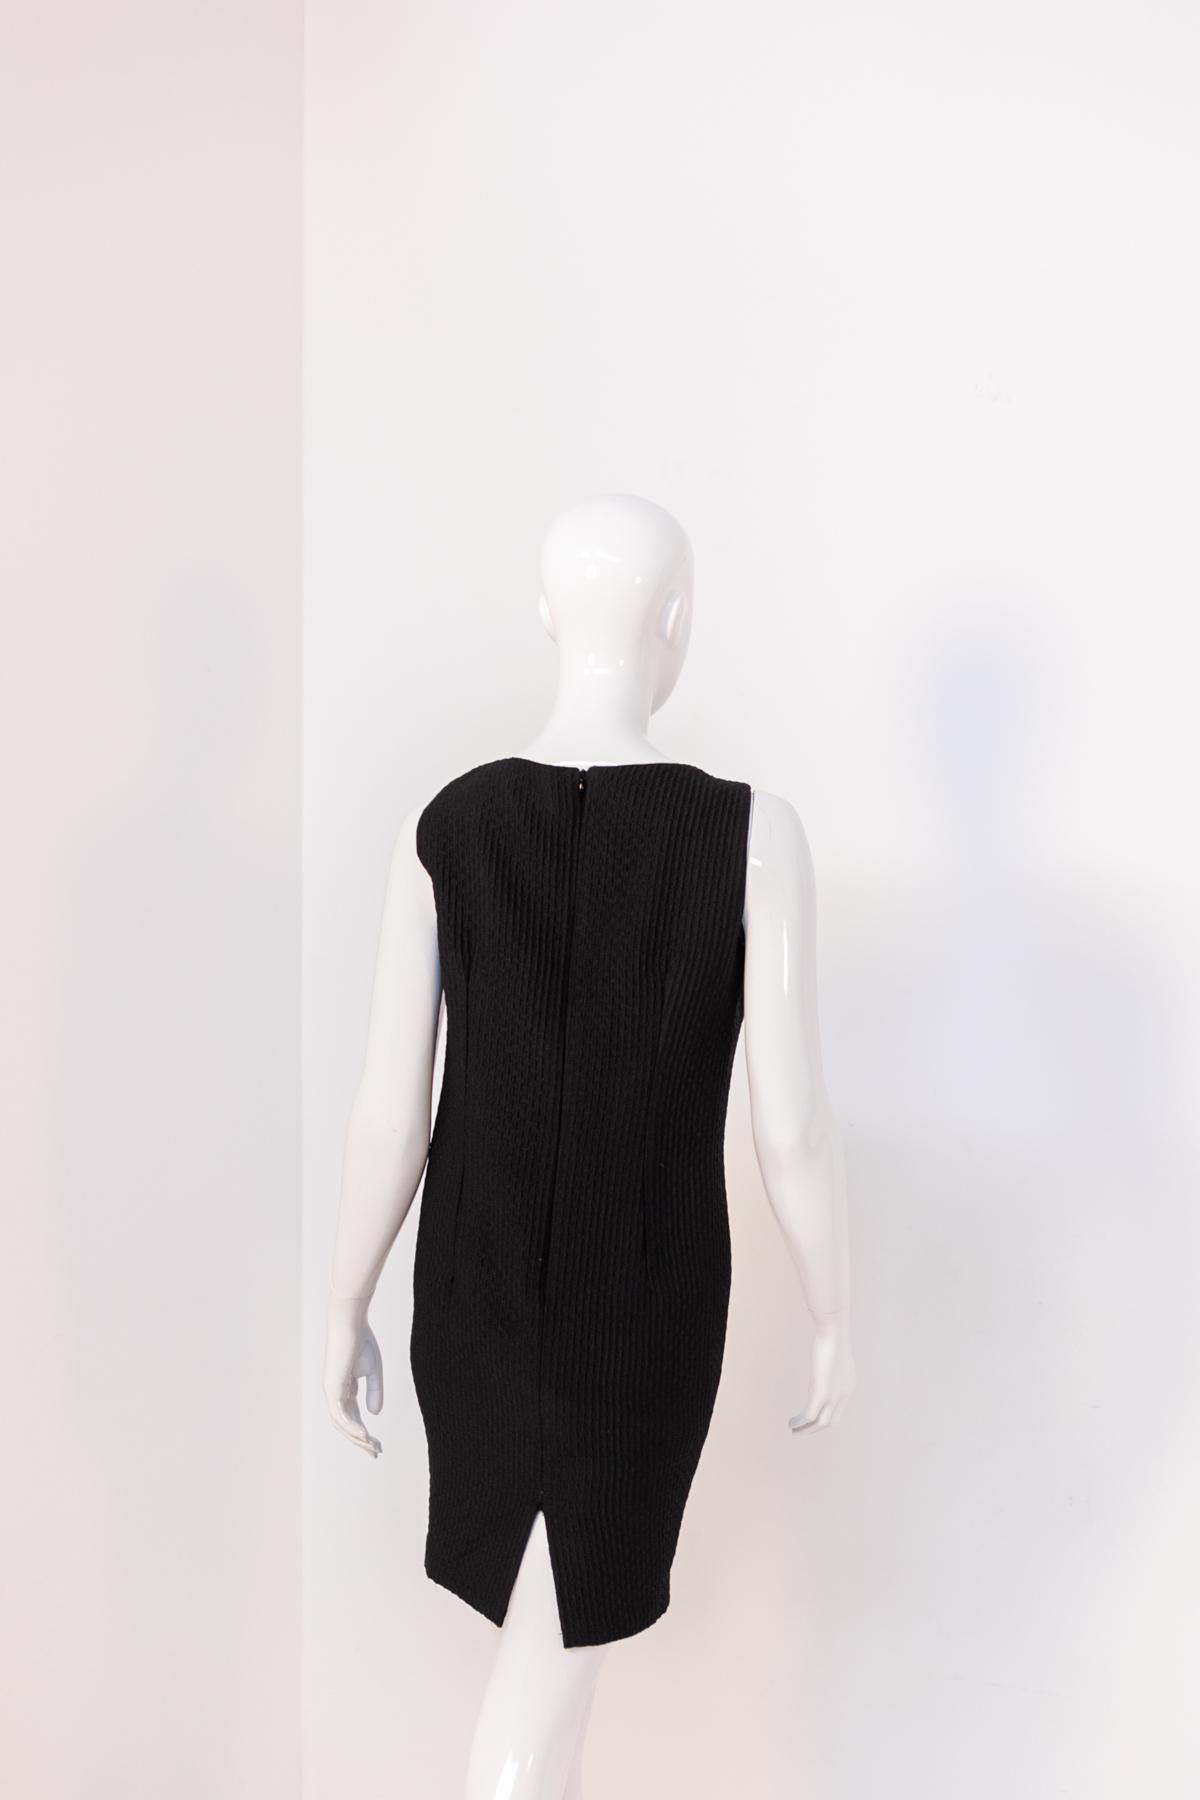 Emilia Andrich Vintage Black Dress with Slit For Sale 4